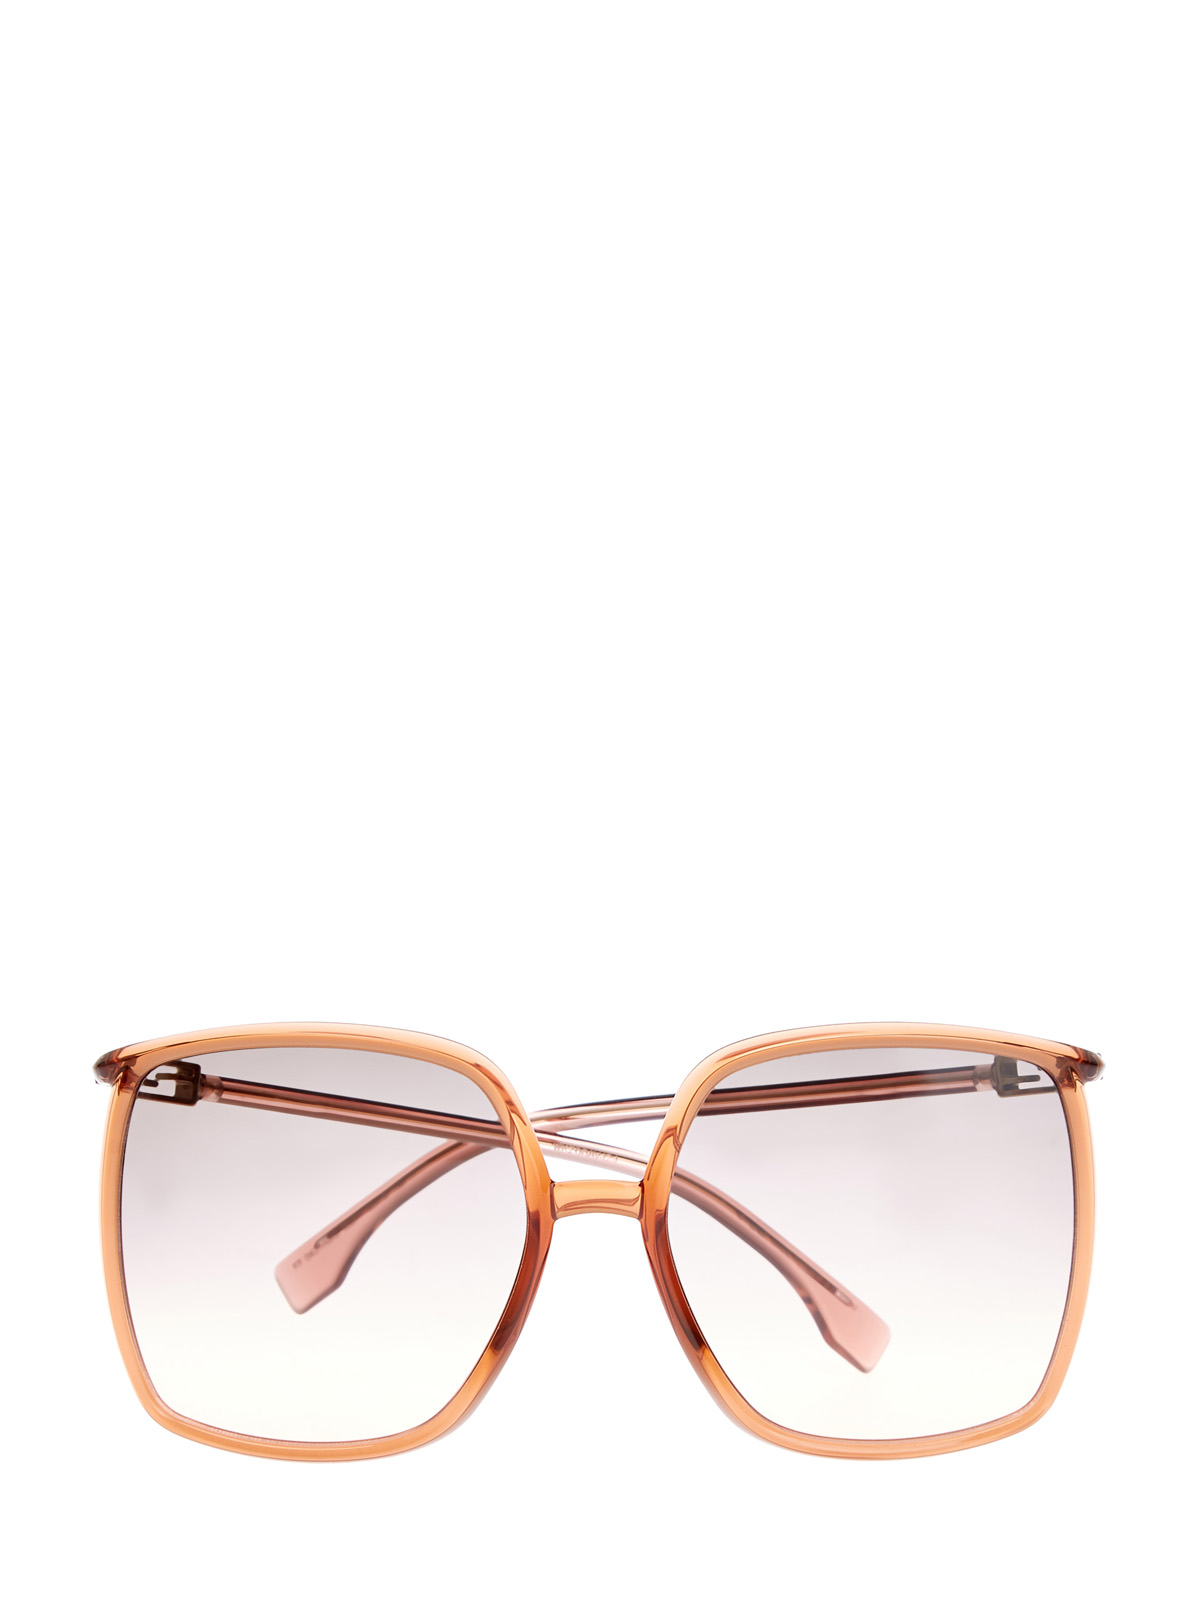 Oversize-очки в легкой оправе с логотипом FF на дужках FENDI (sunglasses), цвет мульти, размер 5;5.5;6;6.5;7;7.5;8;9;10 - фото 1